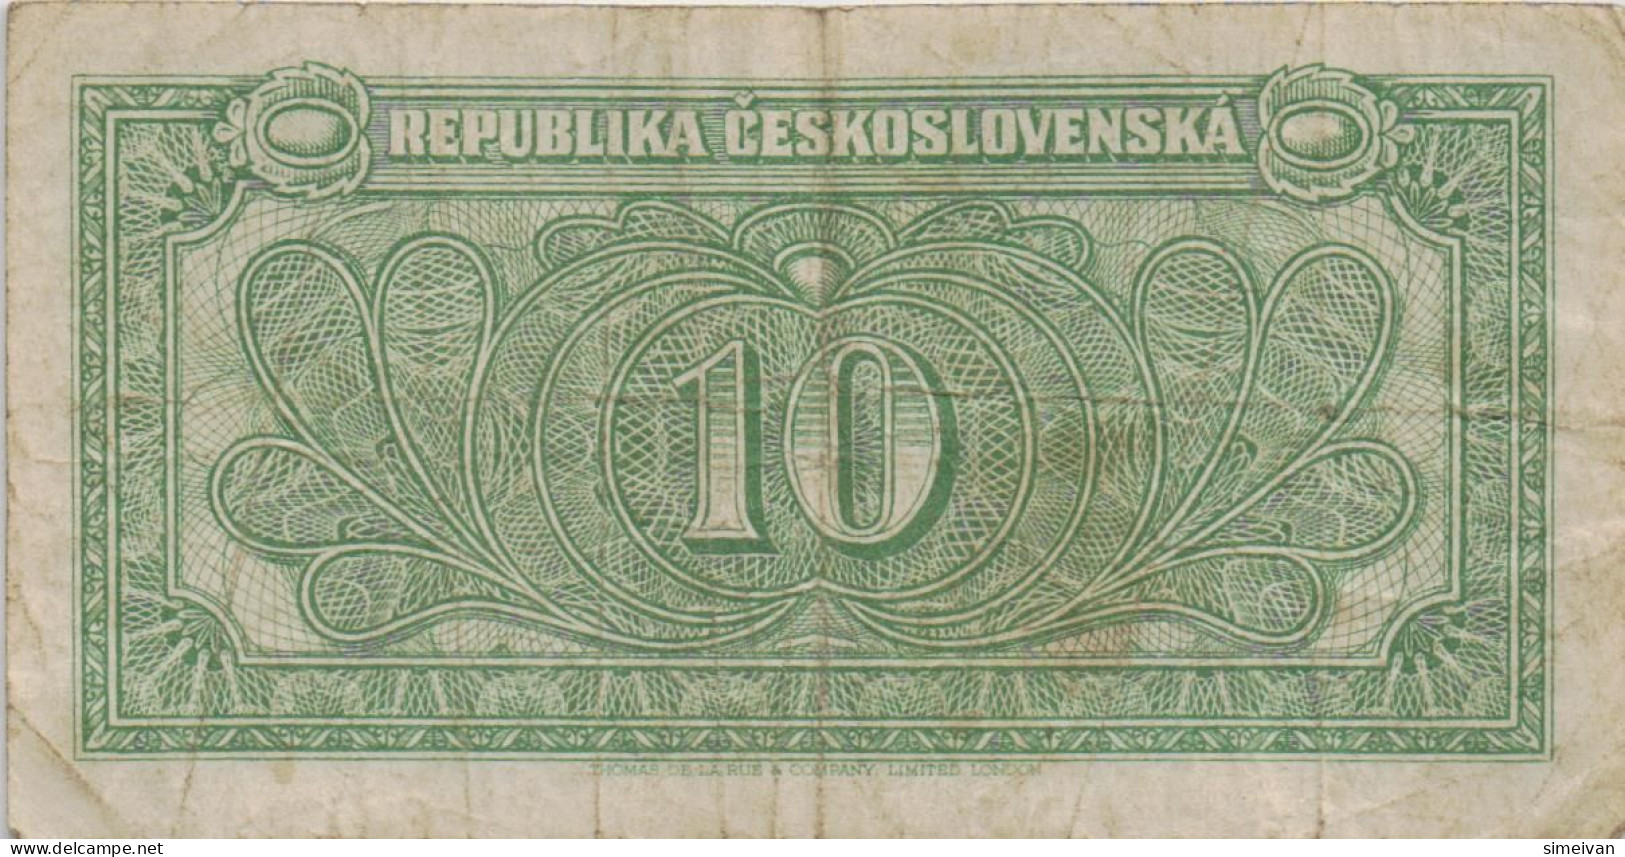 Czechoslovakia 10 Korun ND (1945) P-60a Banknote Europe Currency Tchécoslovaquie Tschechoslowakei #5226 - Czechoslovakia